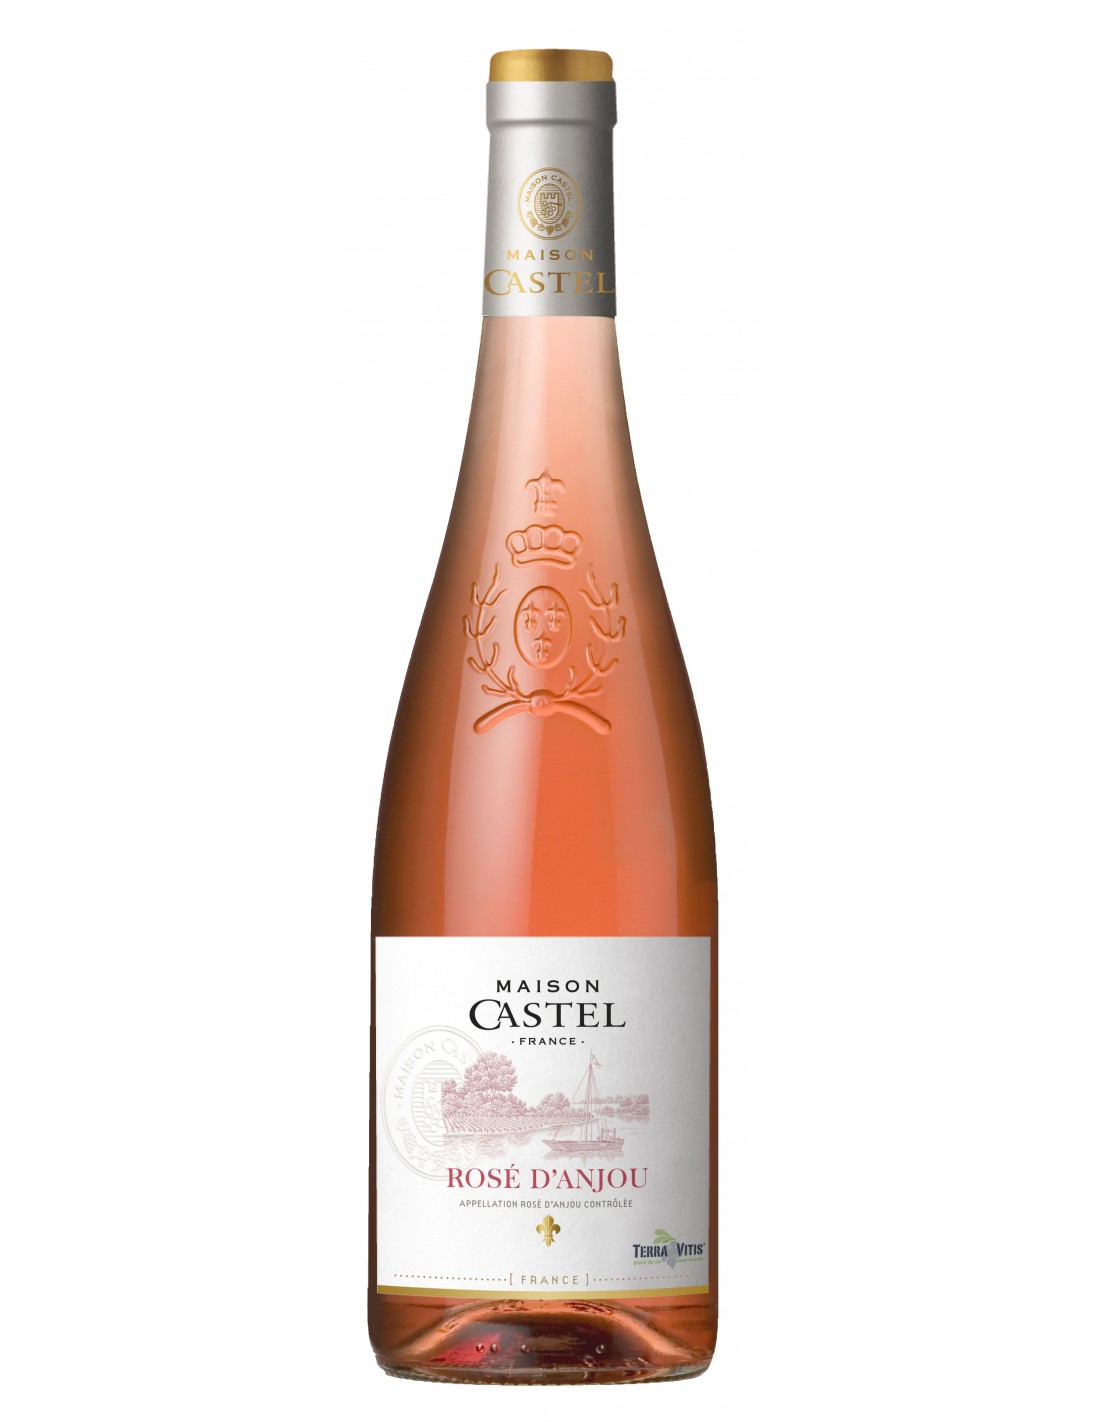 Vin roze sec, D’anjou, Maison Castel Pays d’Oc, 0.75L, 10.5% alc., Franta alcooldiscount.ro